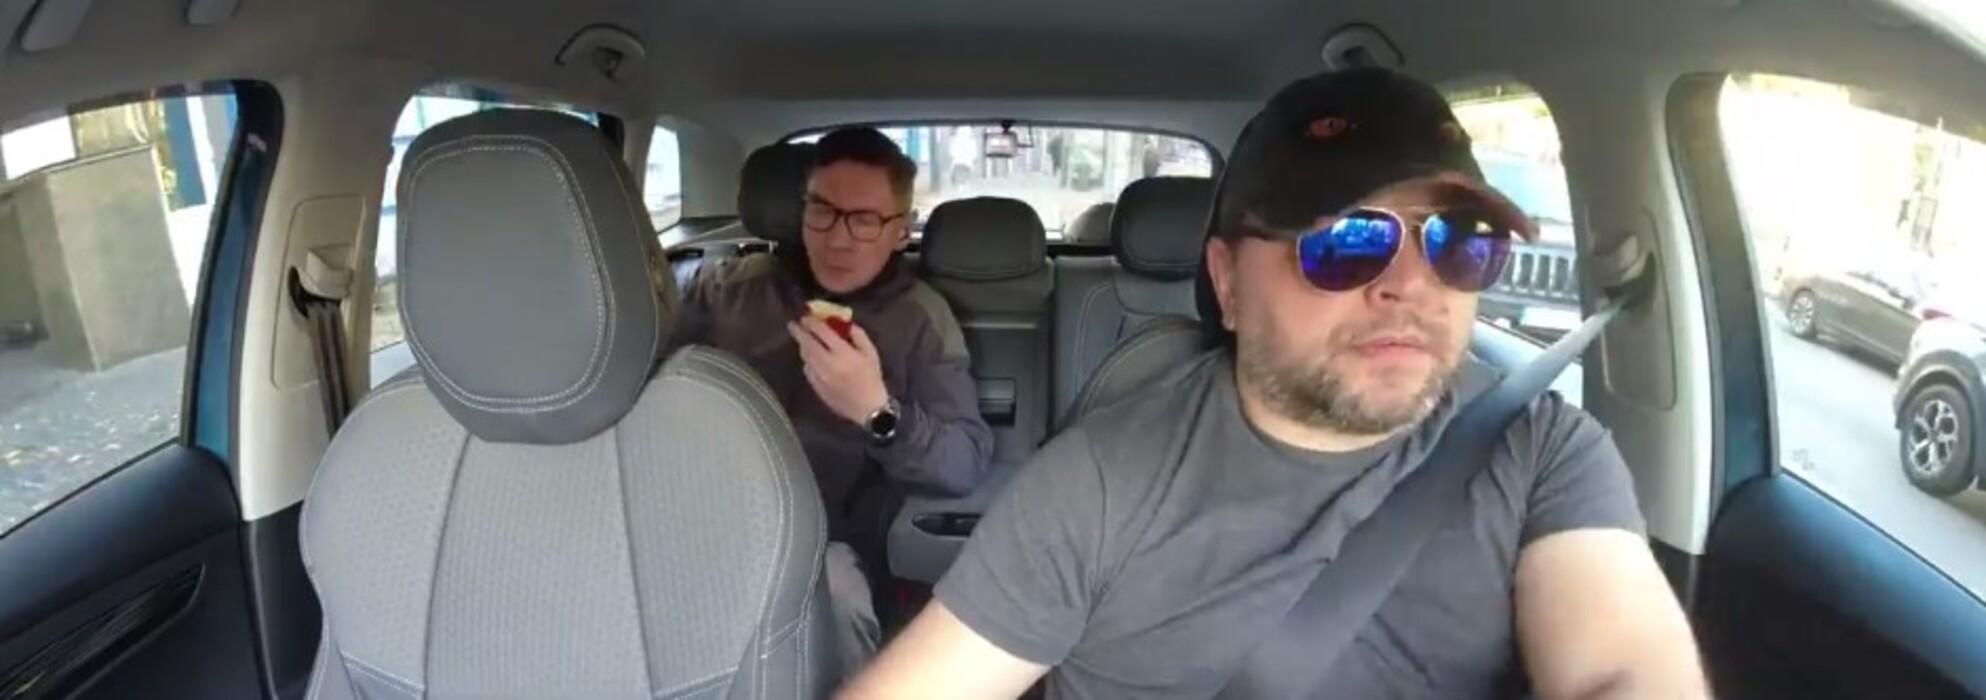 Киевский таксист выгнал пассажира с яблоком: в сети обсуждают громкое видео